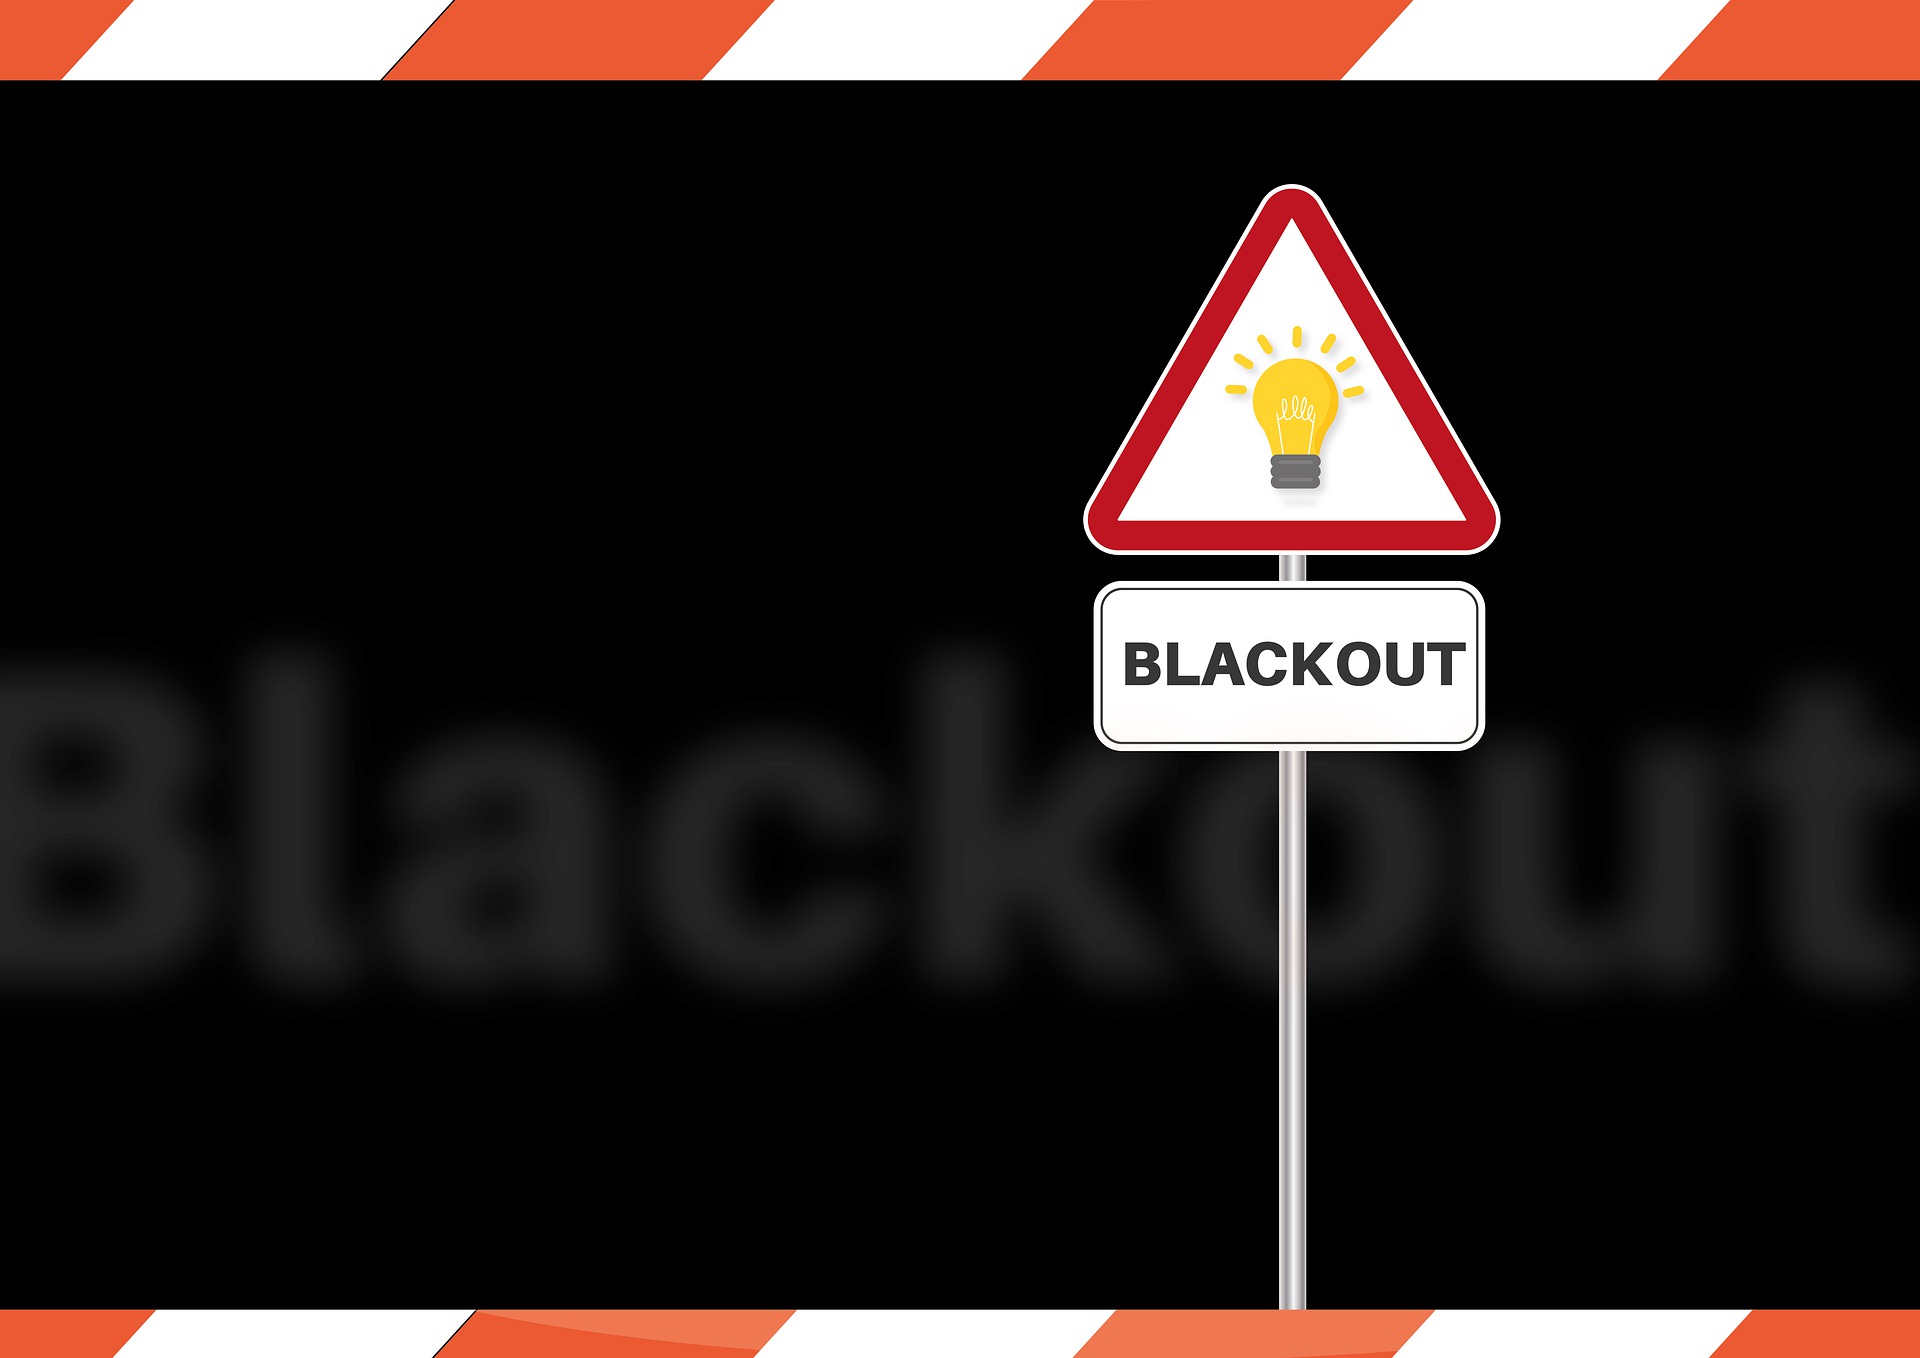 Blackout: Checkliste des BKK für den Notfall